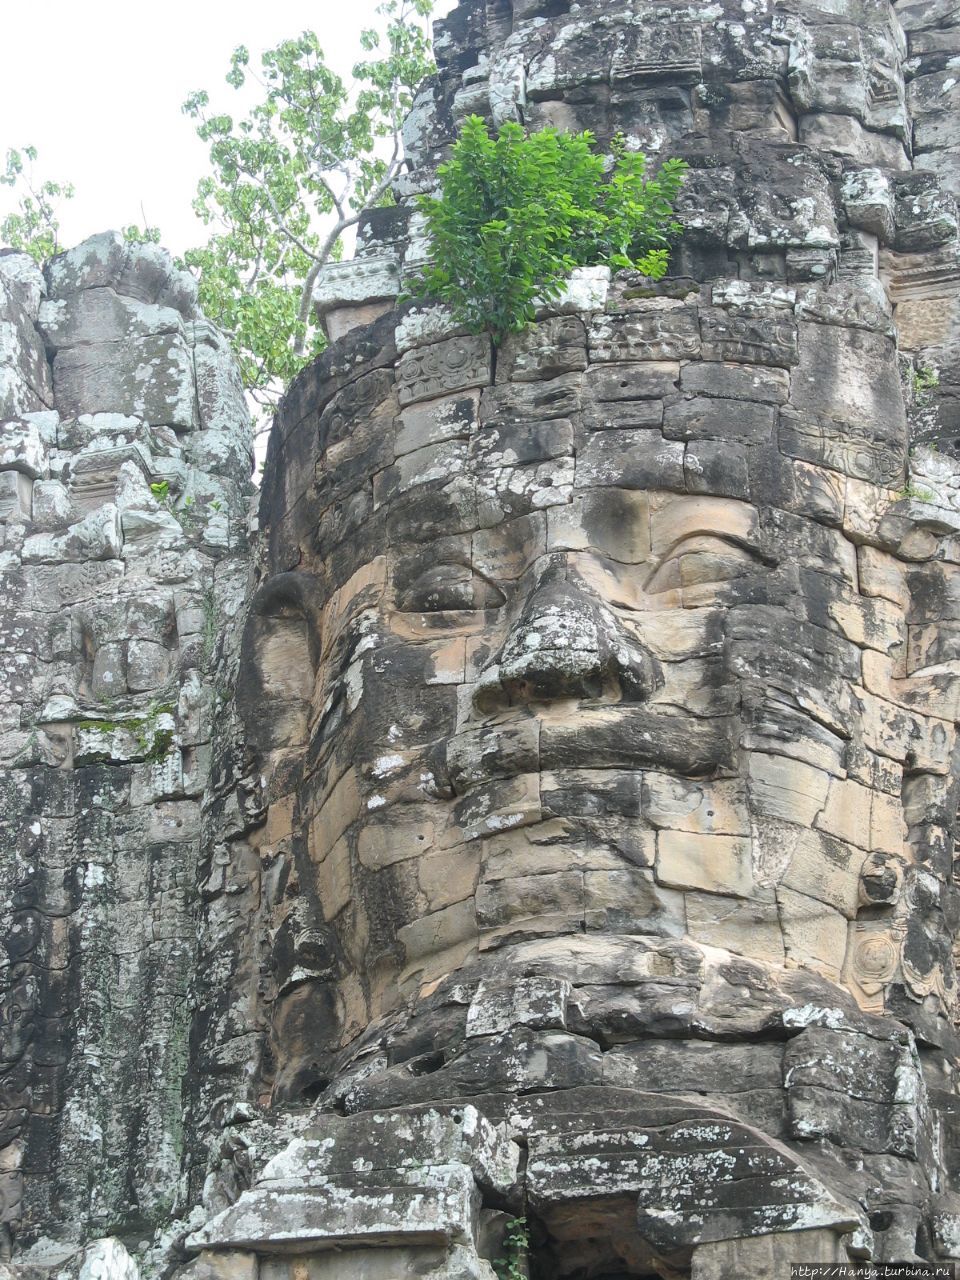 Южные ворота в Ангкор Том Ангкор (столица государства кхмеров), Камбоджа